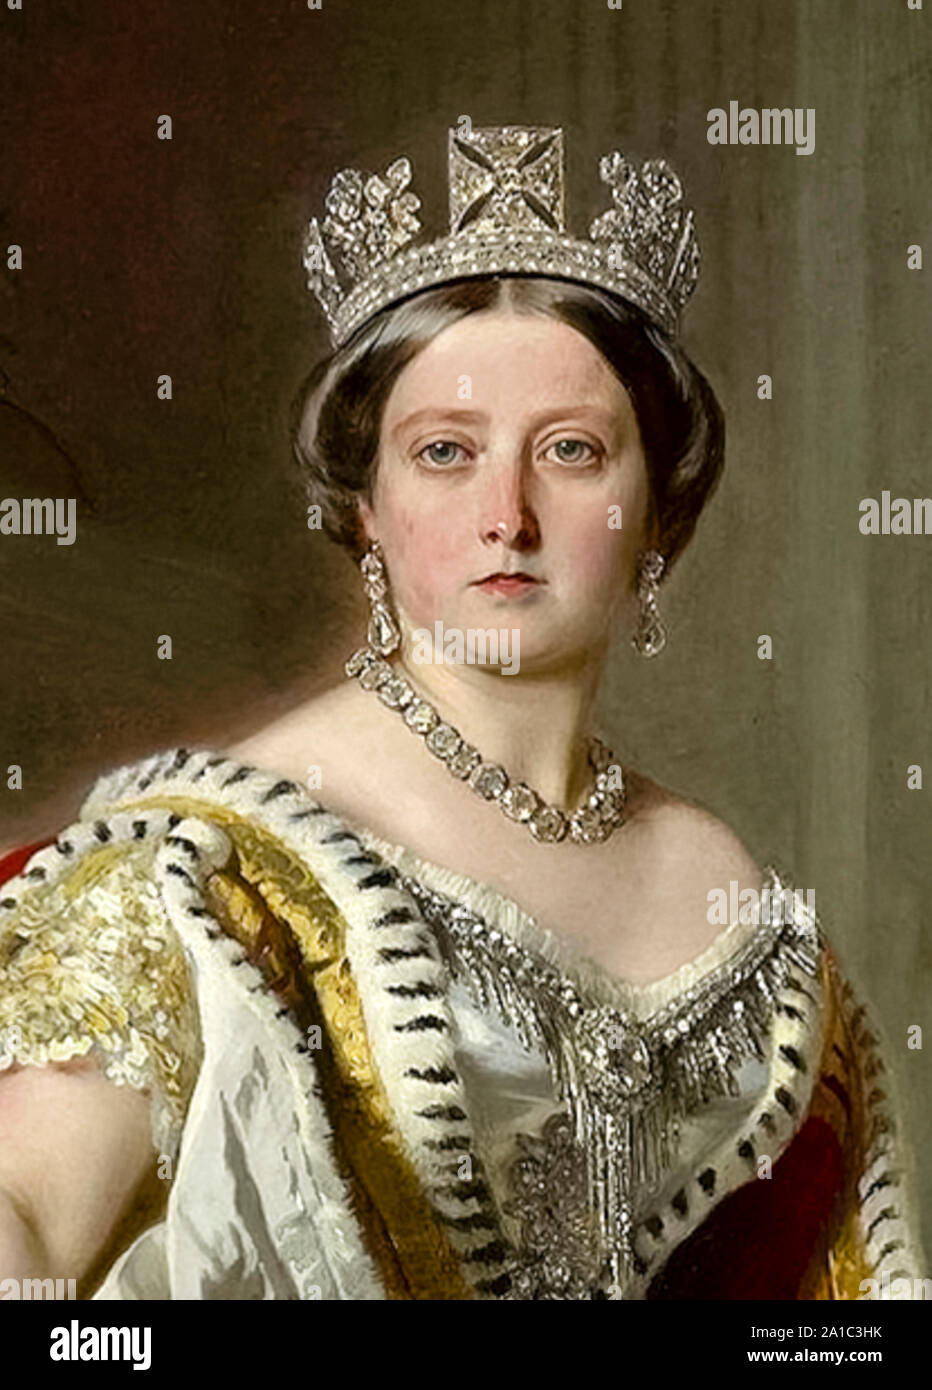 Königin Victoria (1819-1901), Detail aus Öl Gemälde von Franz Xaver Winterhalter (1805-1873) im Jahre 1859 gemalt. Stockfoto